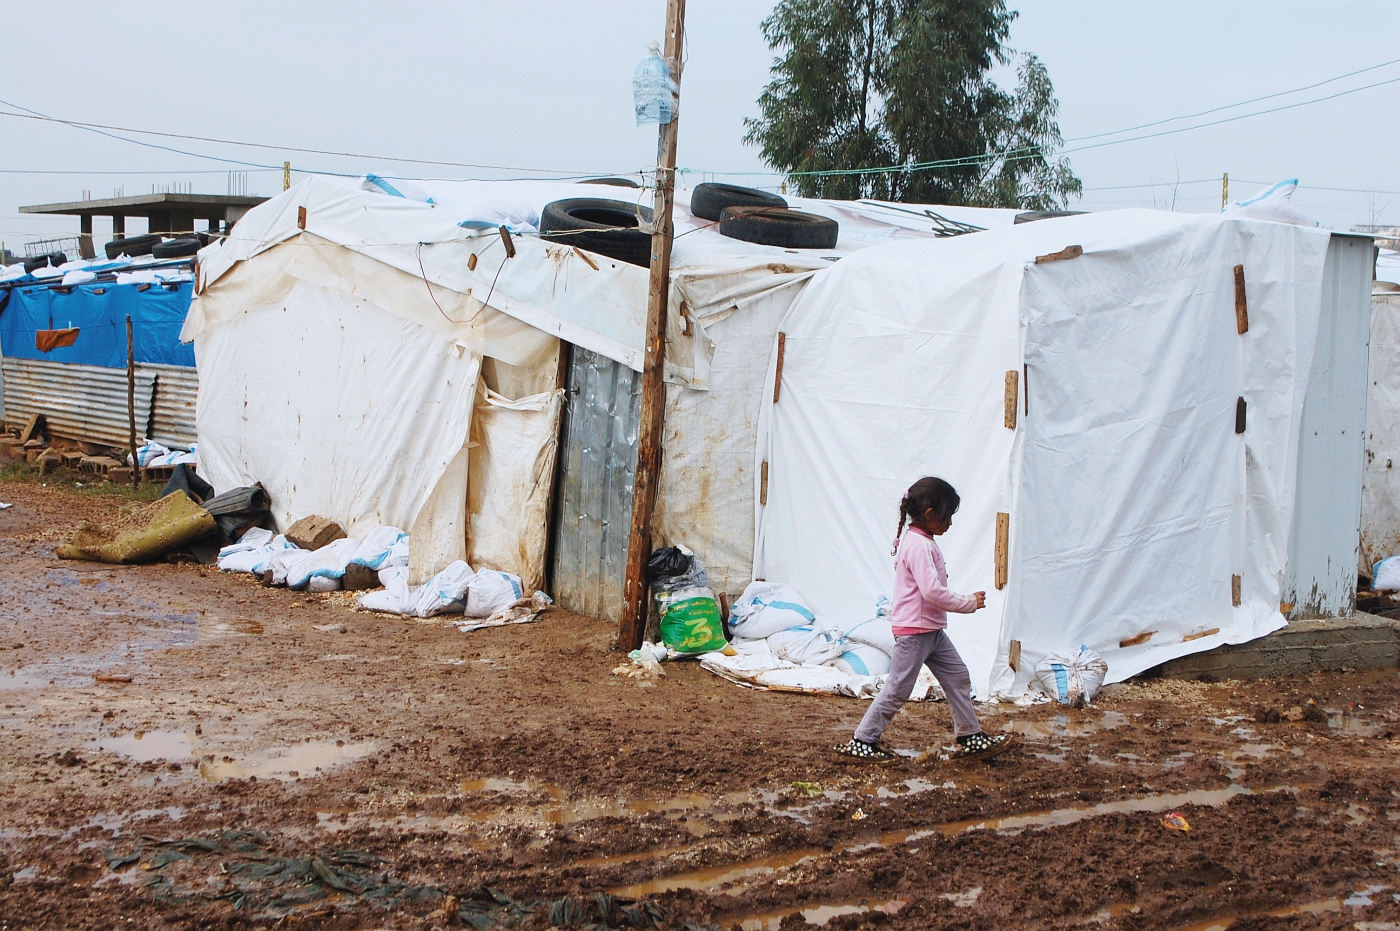 Nielegalne obozowisko syryjskich uchodźców w Queshra, Liban, fot. Wojciech Cegielski 